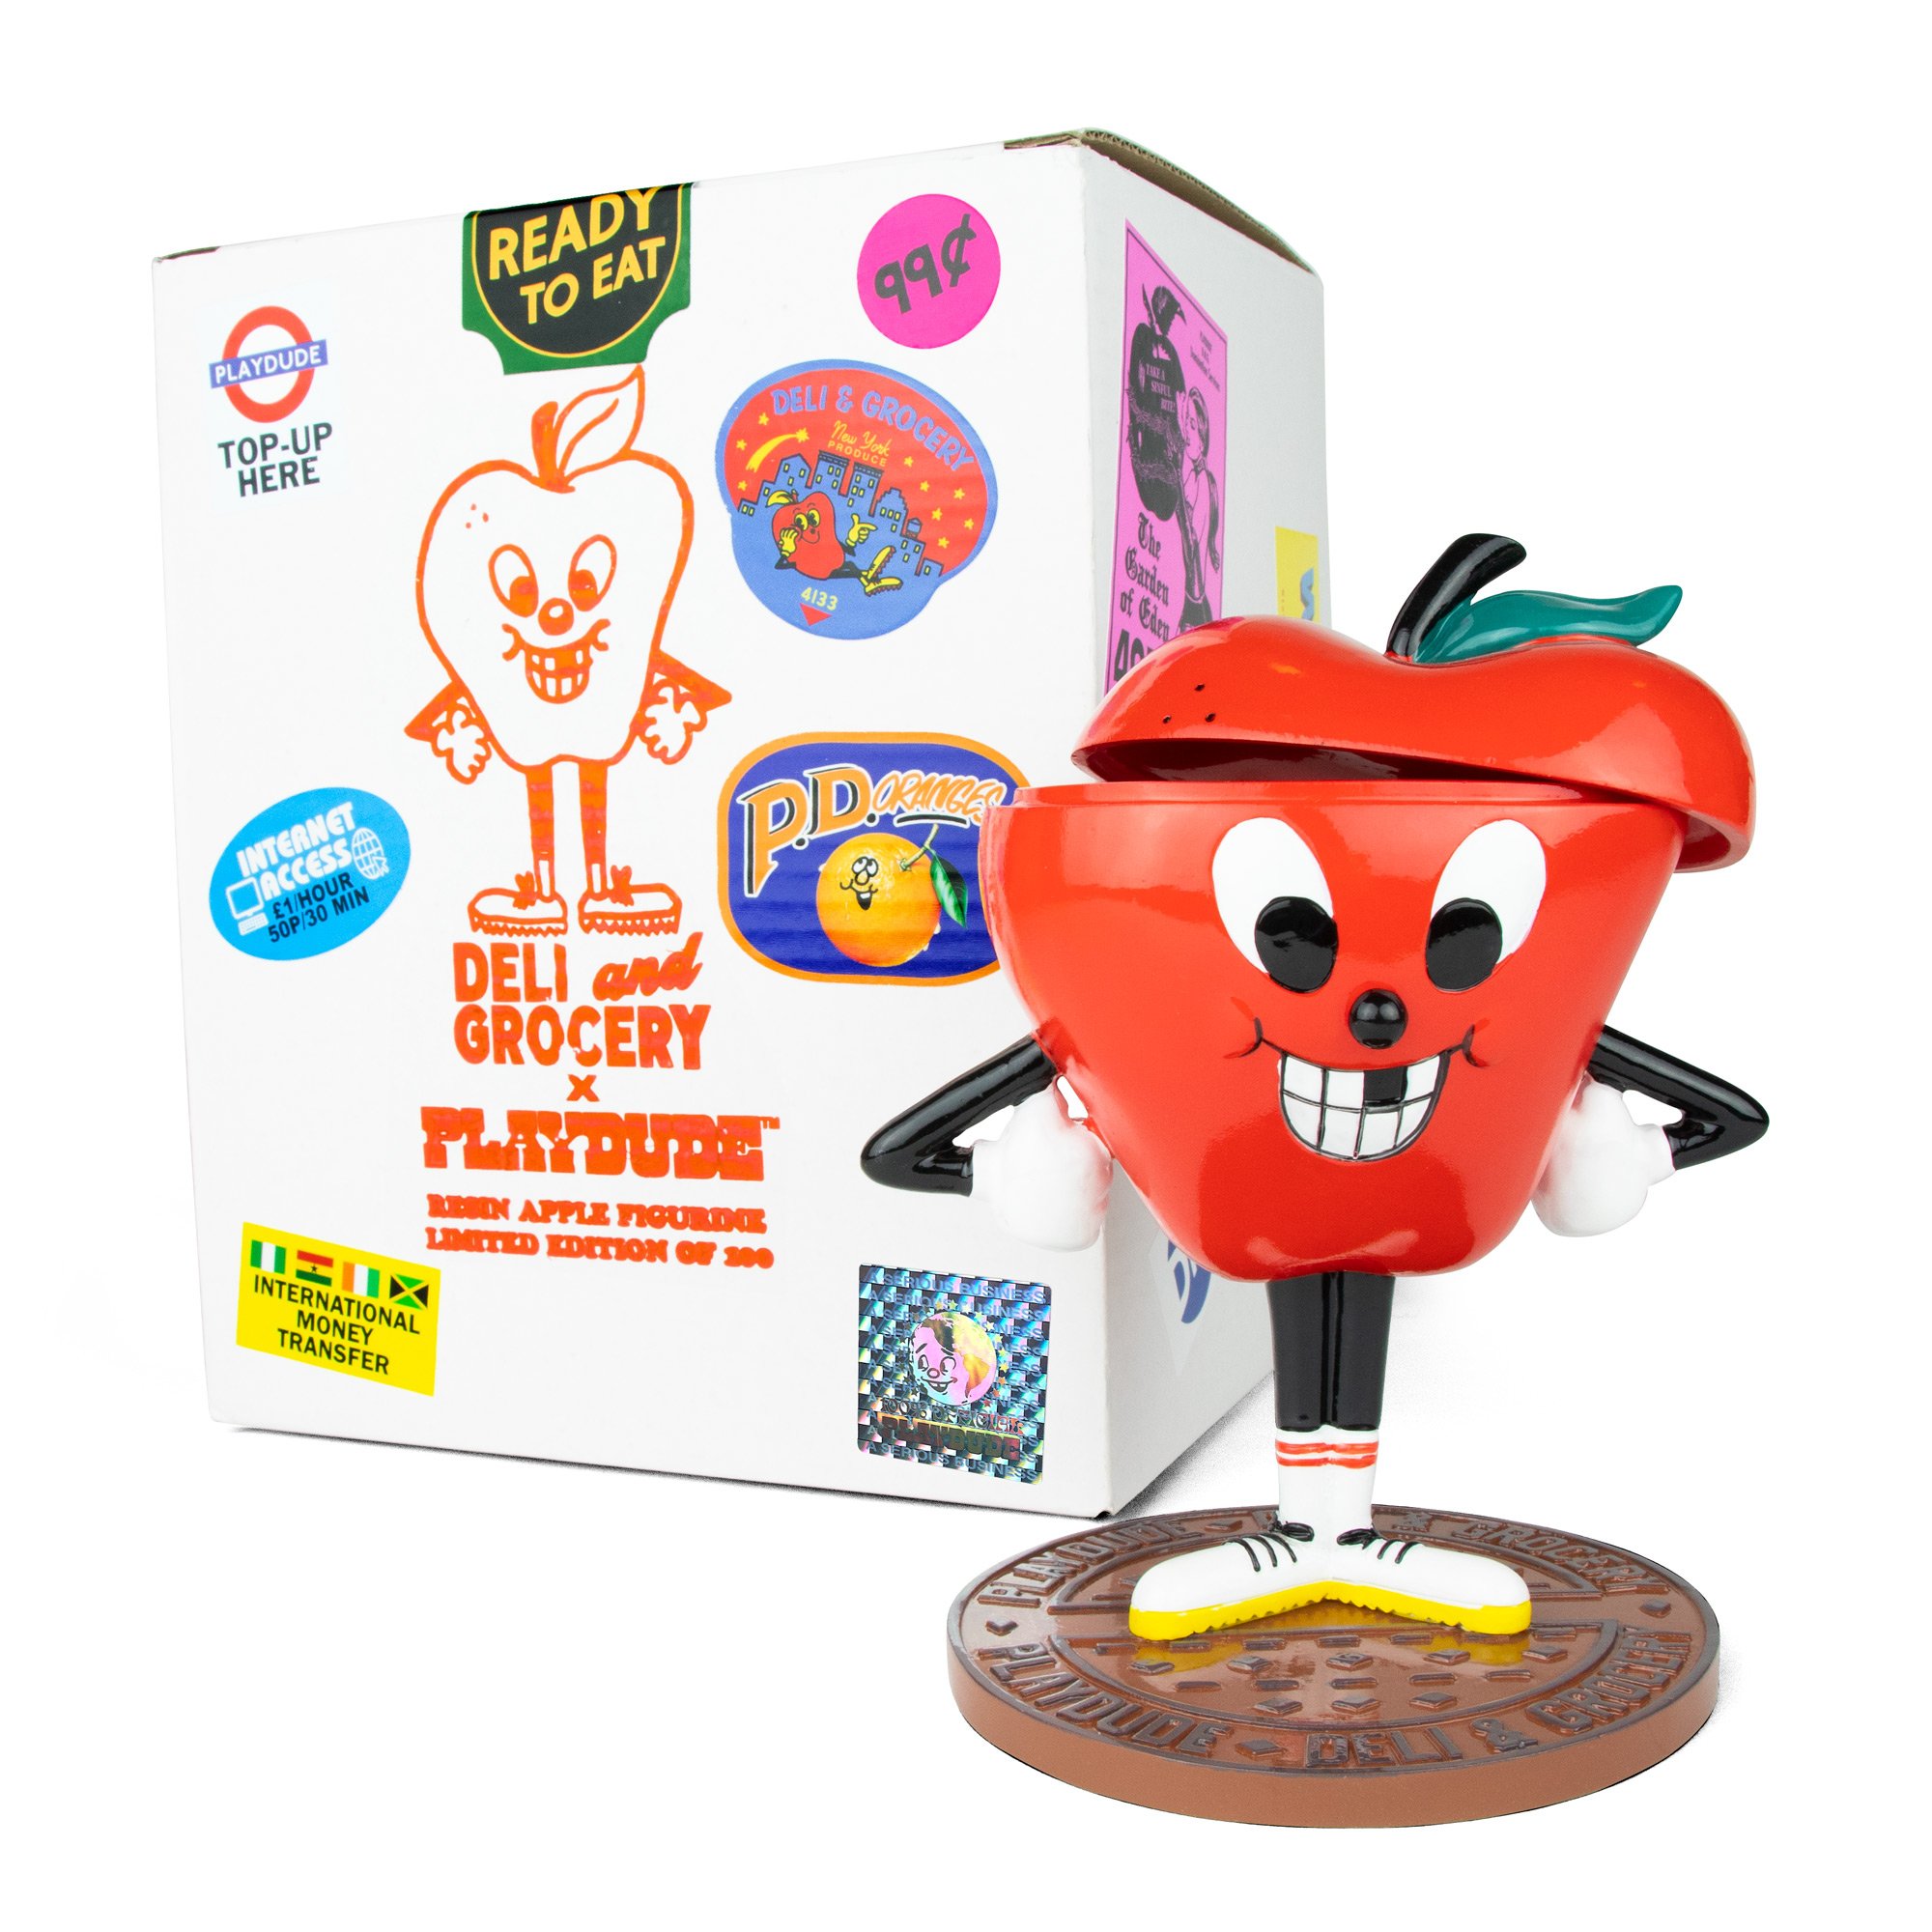 playdude-deli-n-grocery-apple-figurine-3.jpg